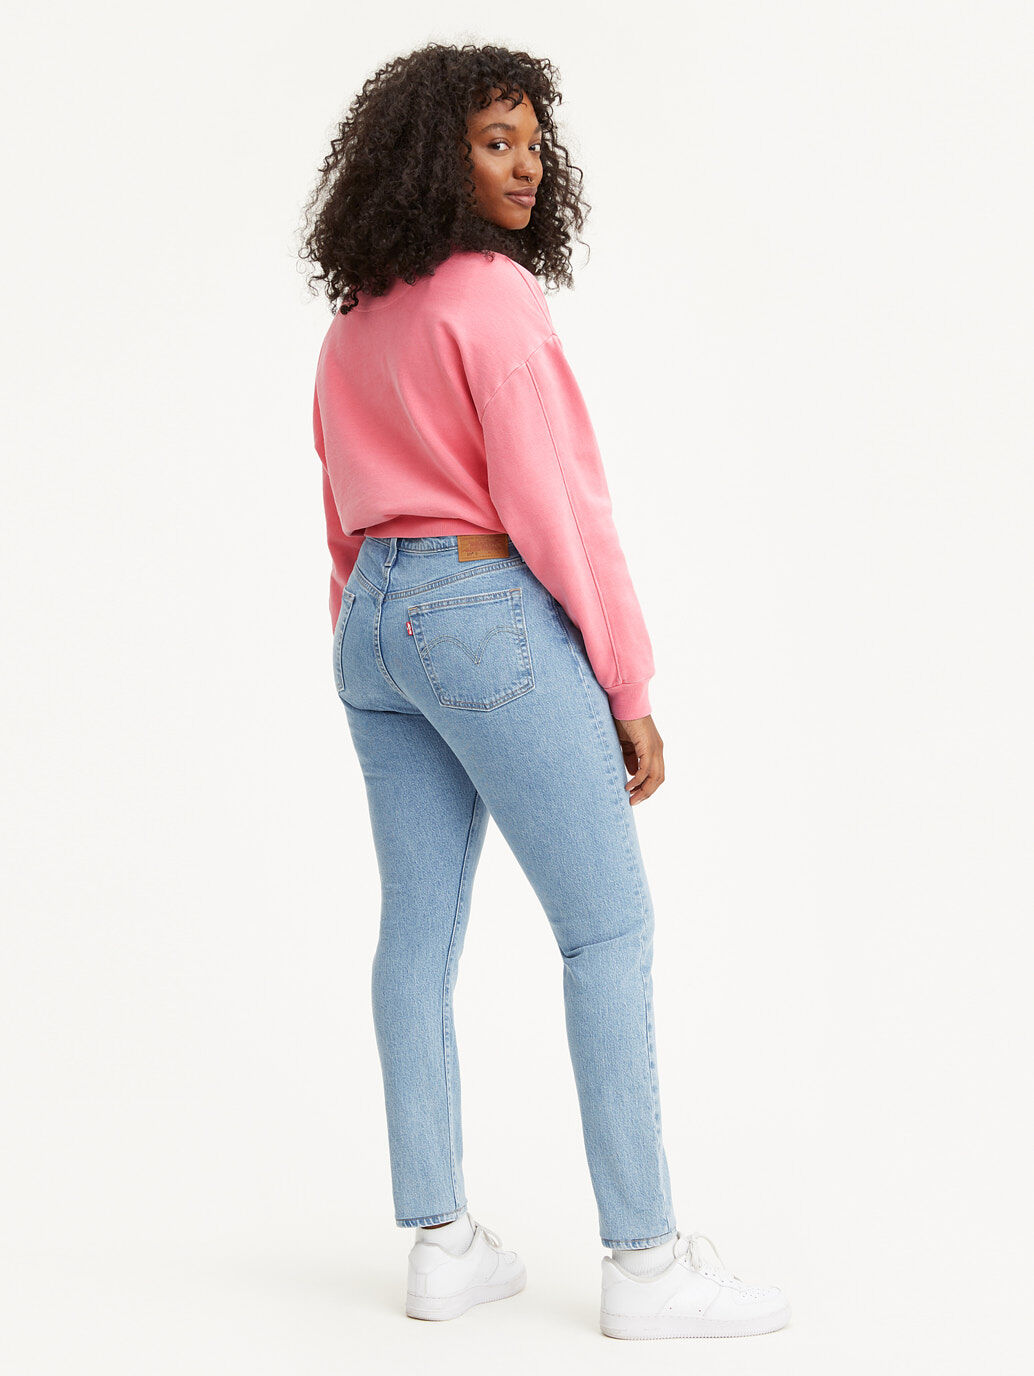 women's 501 skinny jeans